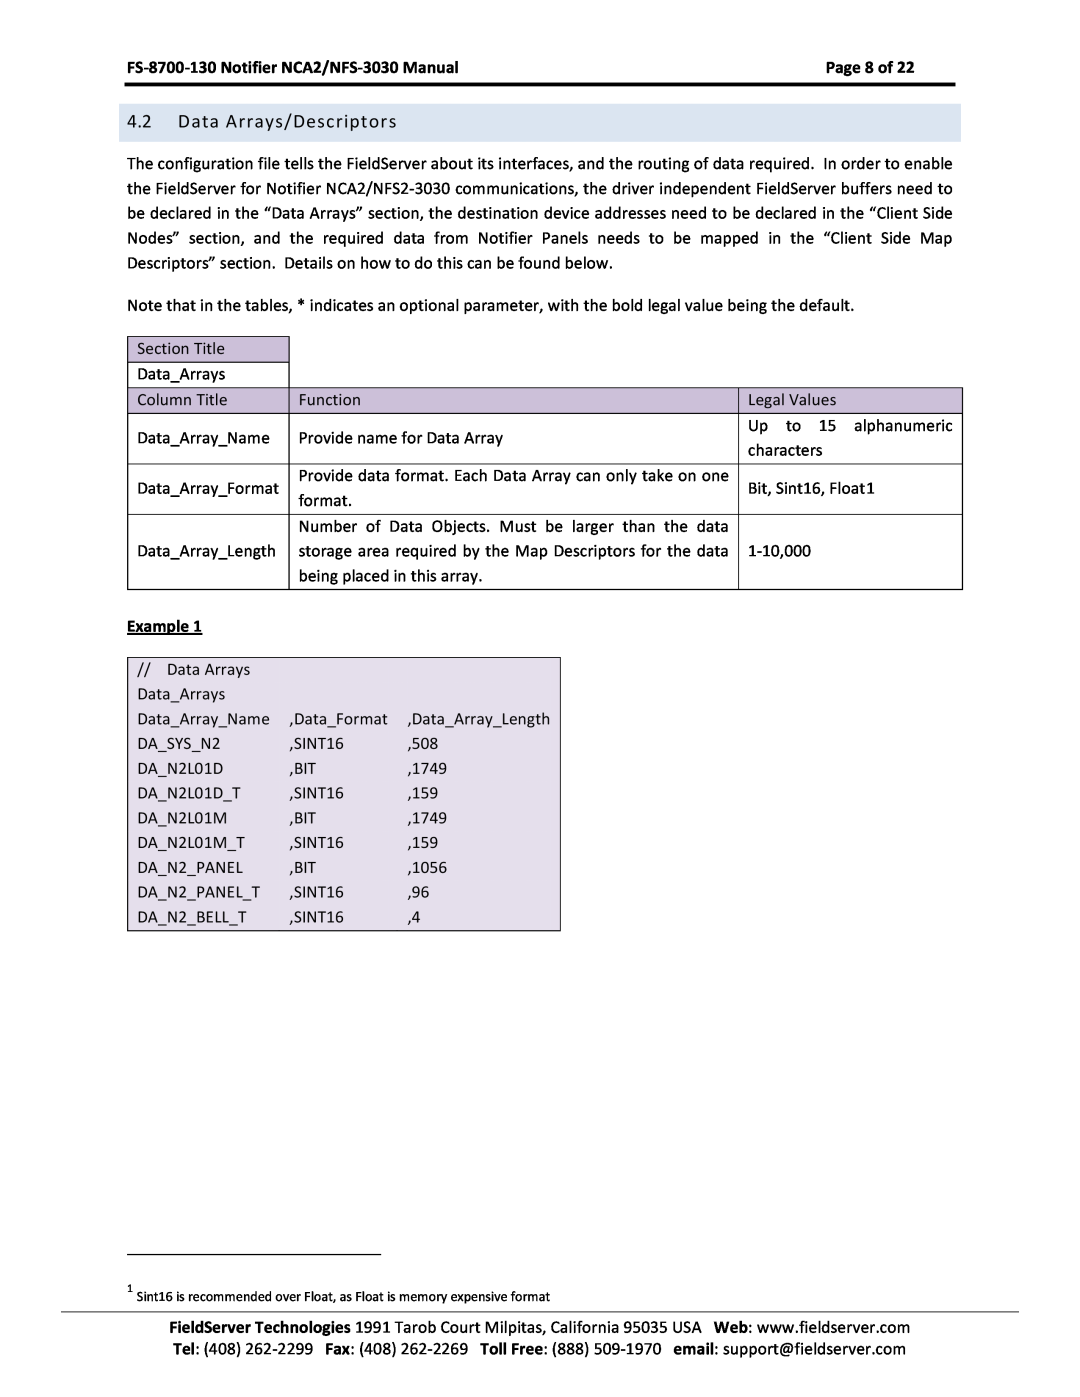 FieldServer NCA2-NFS2-3030 Data Arrays/Descriptors, Page 8 of, Example, FS-8700-130 Notifier NCA2/NFS-3030 Manual 